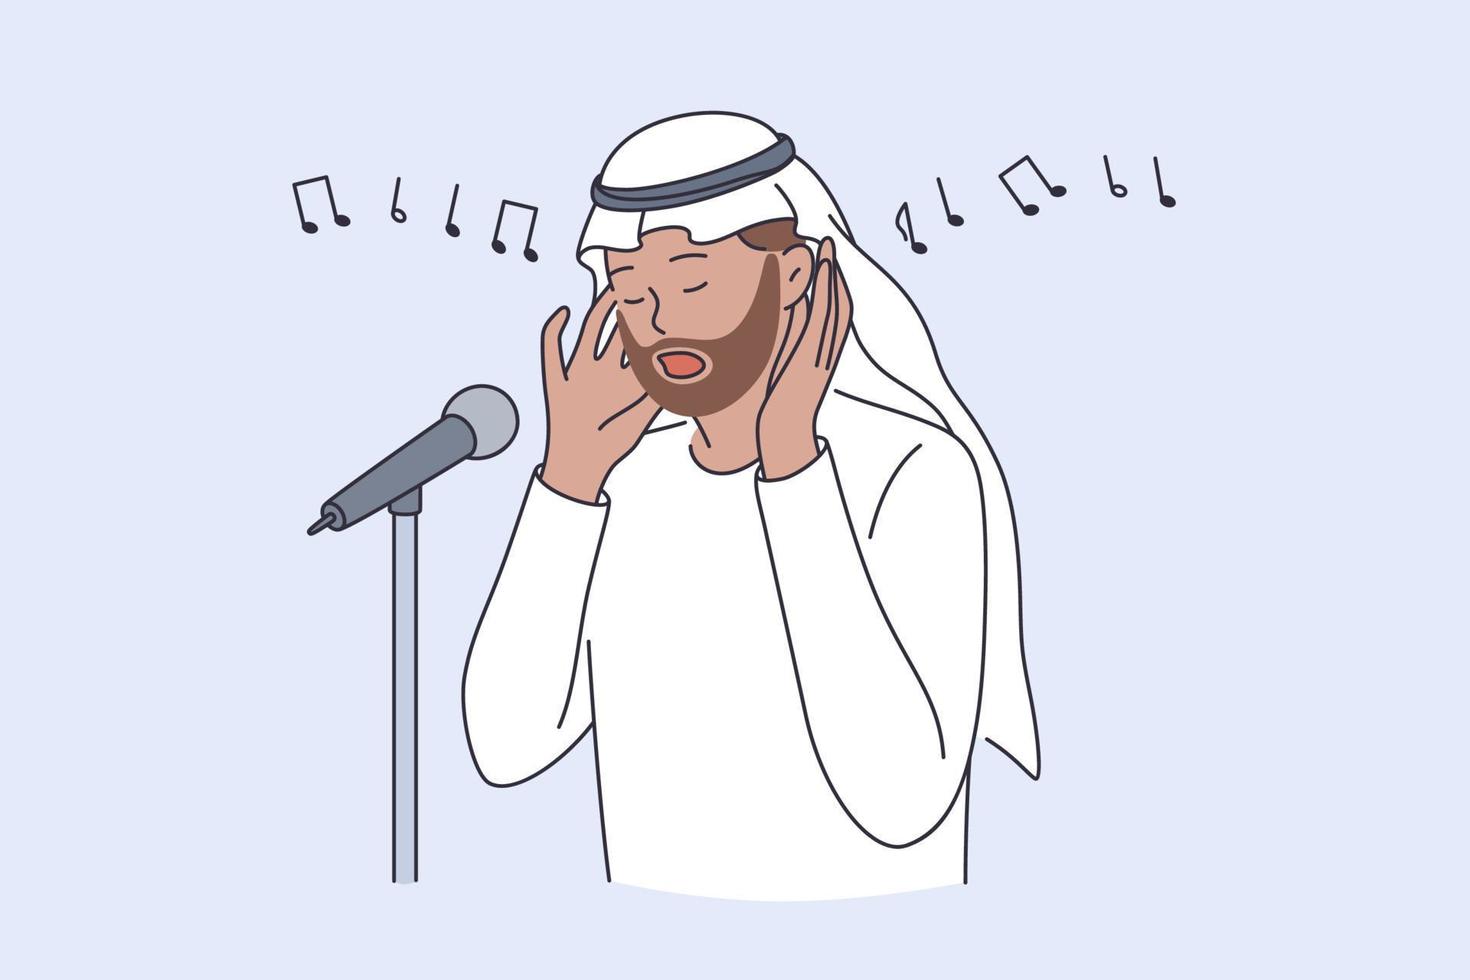 muezzin e islamico cultura concetto. uomo persona recitatore chiamata per pregare o chiamato adhan cantando religioso canzone vettore illustrazione